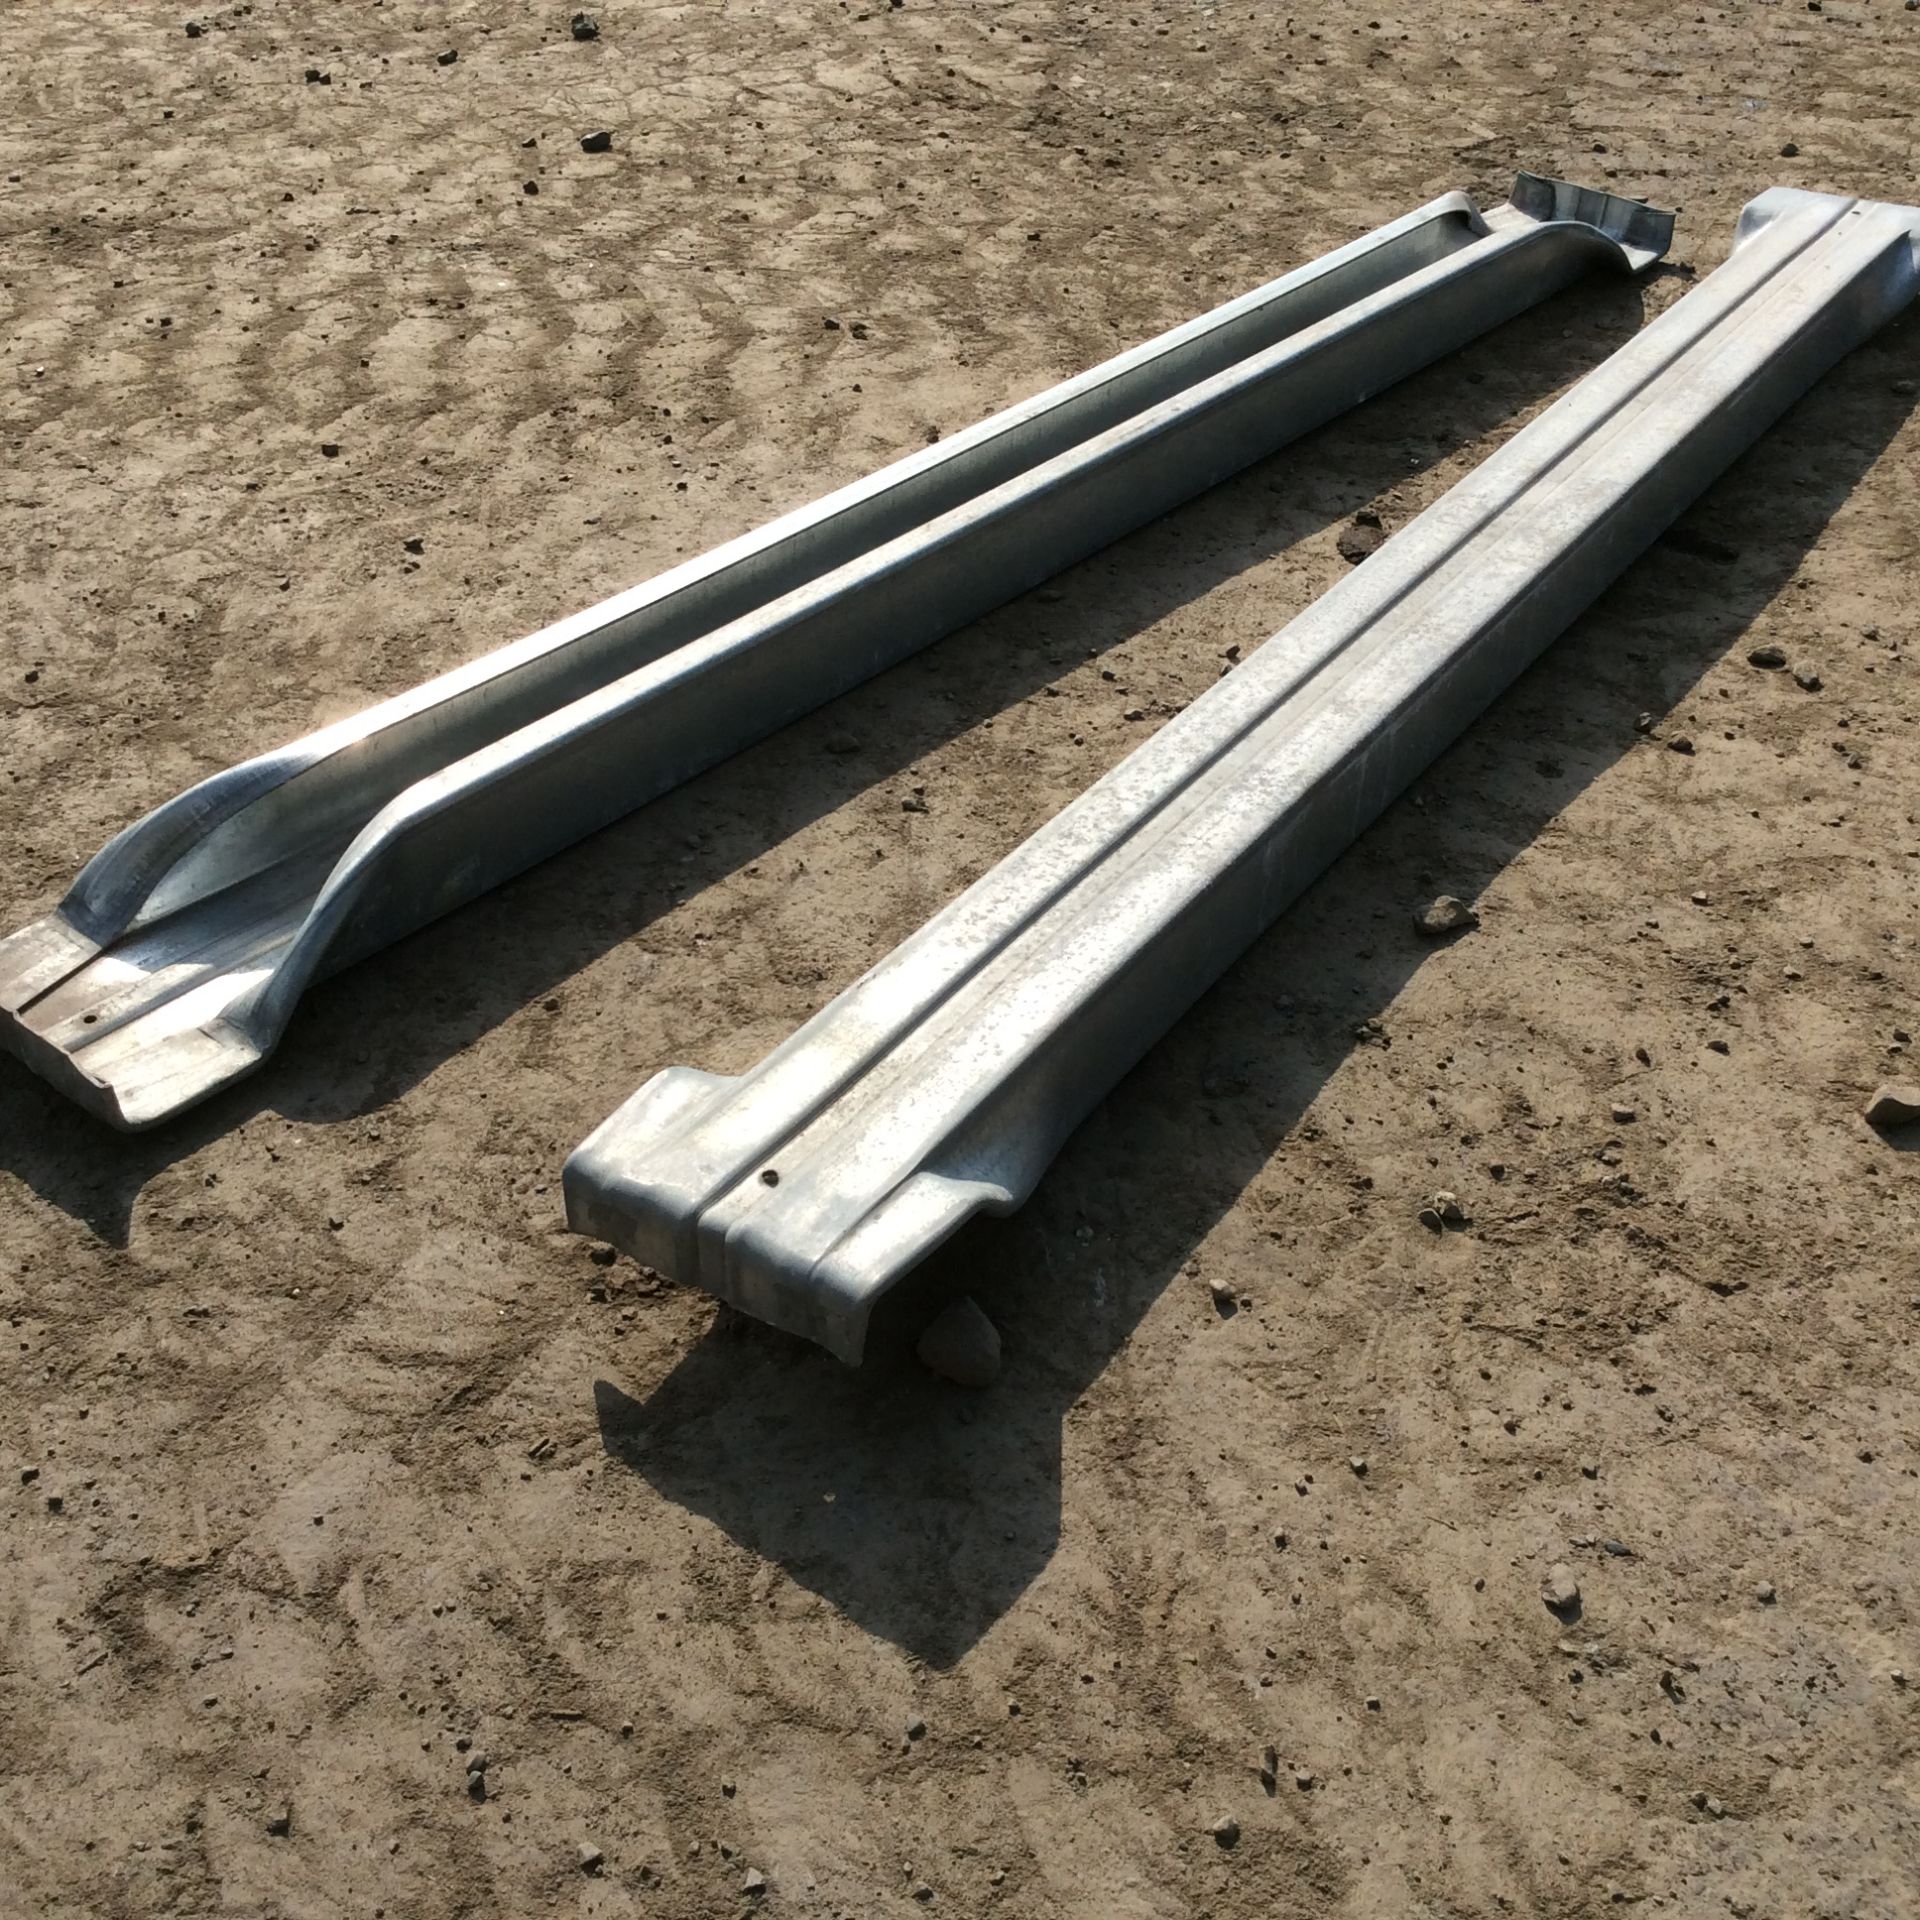 x 98 Gavanised Steel Decking For Pallet Racking - 111cm Width. - Image 2 of 2